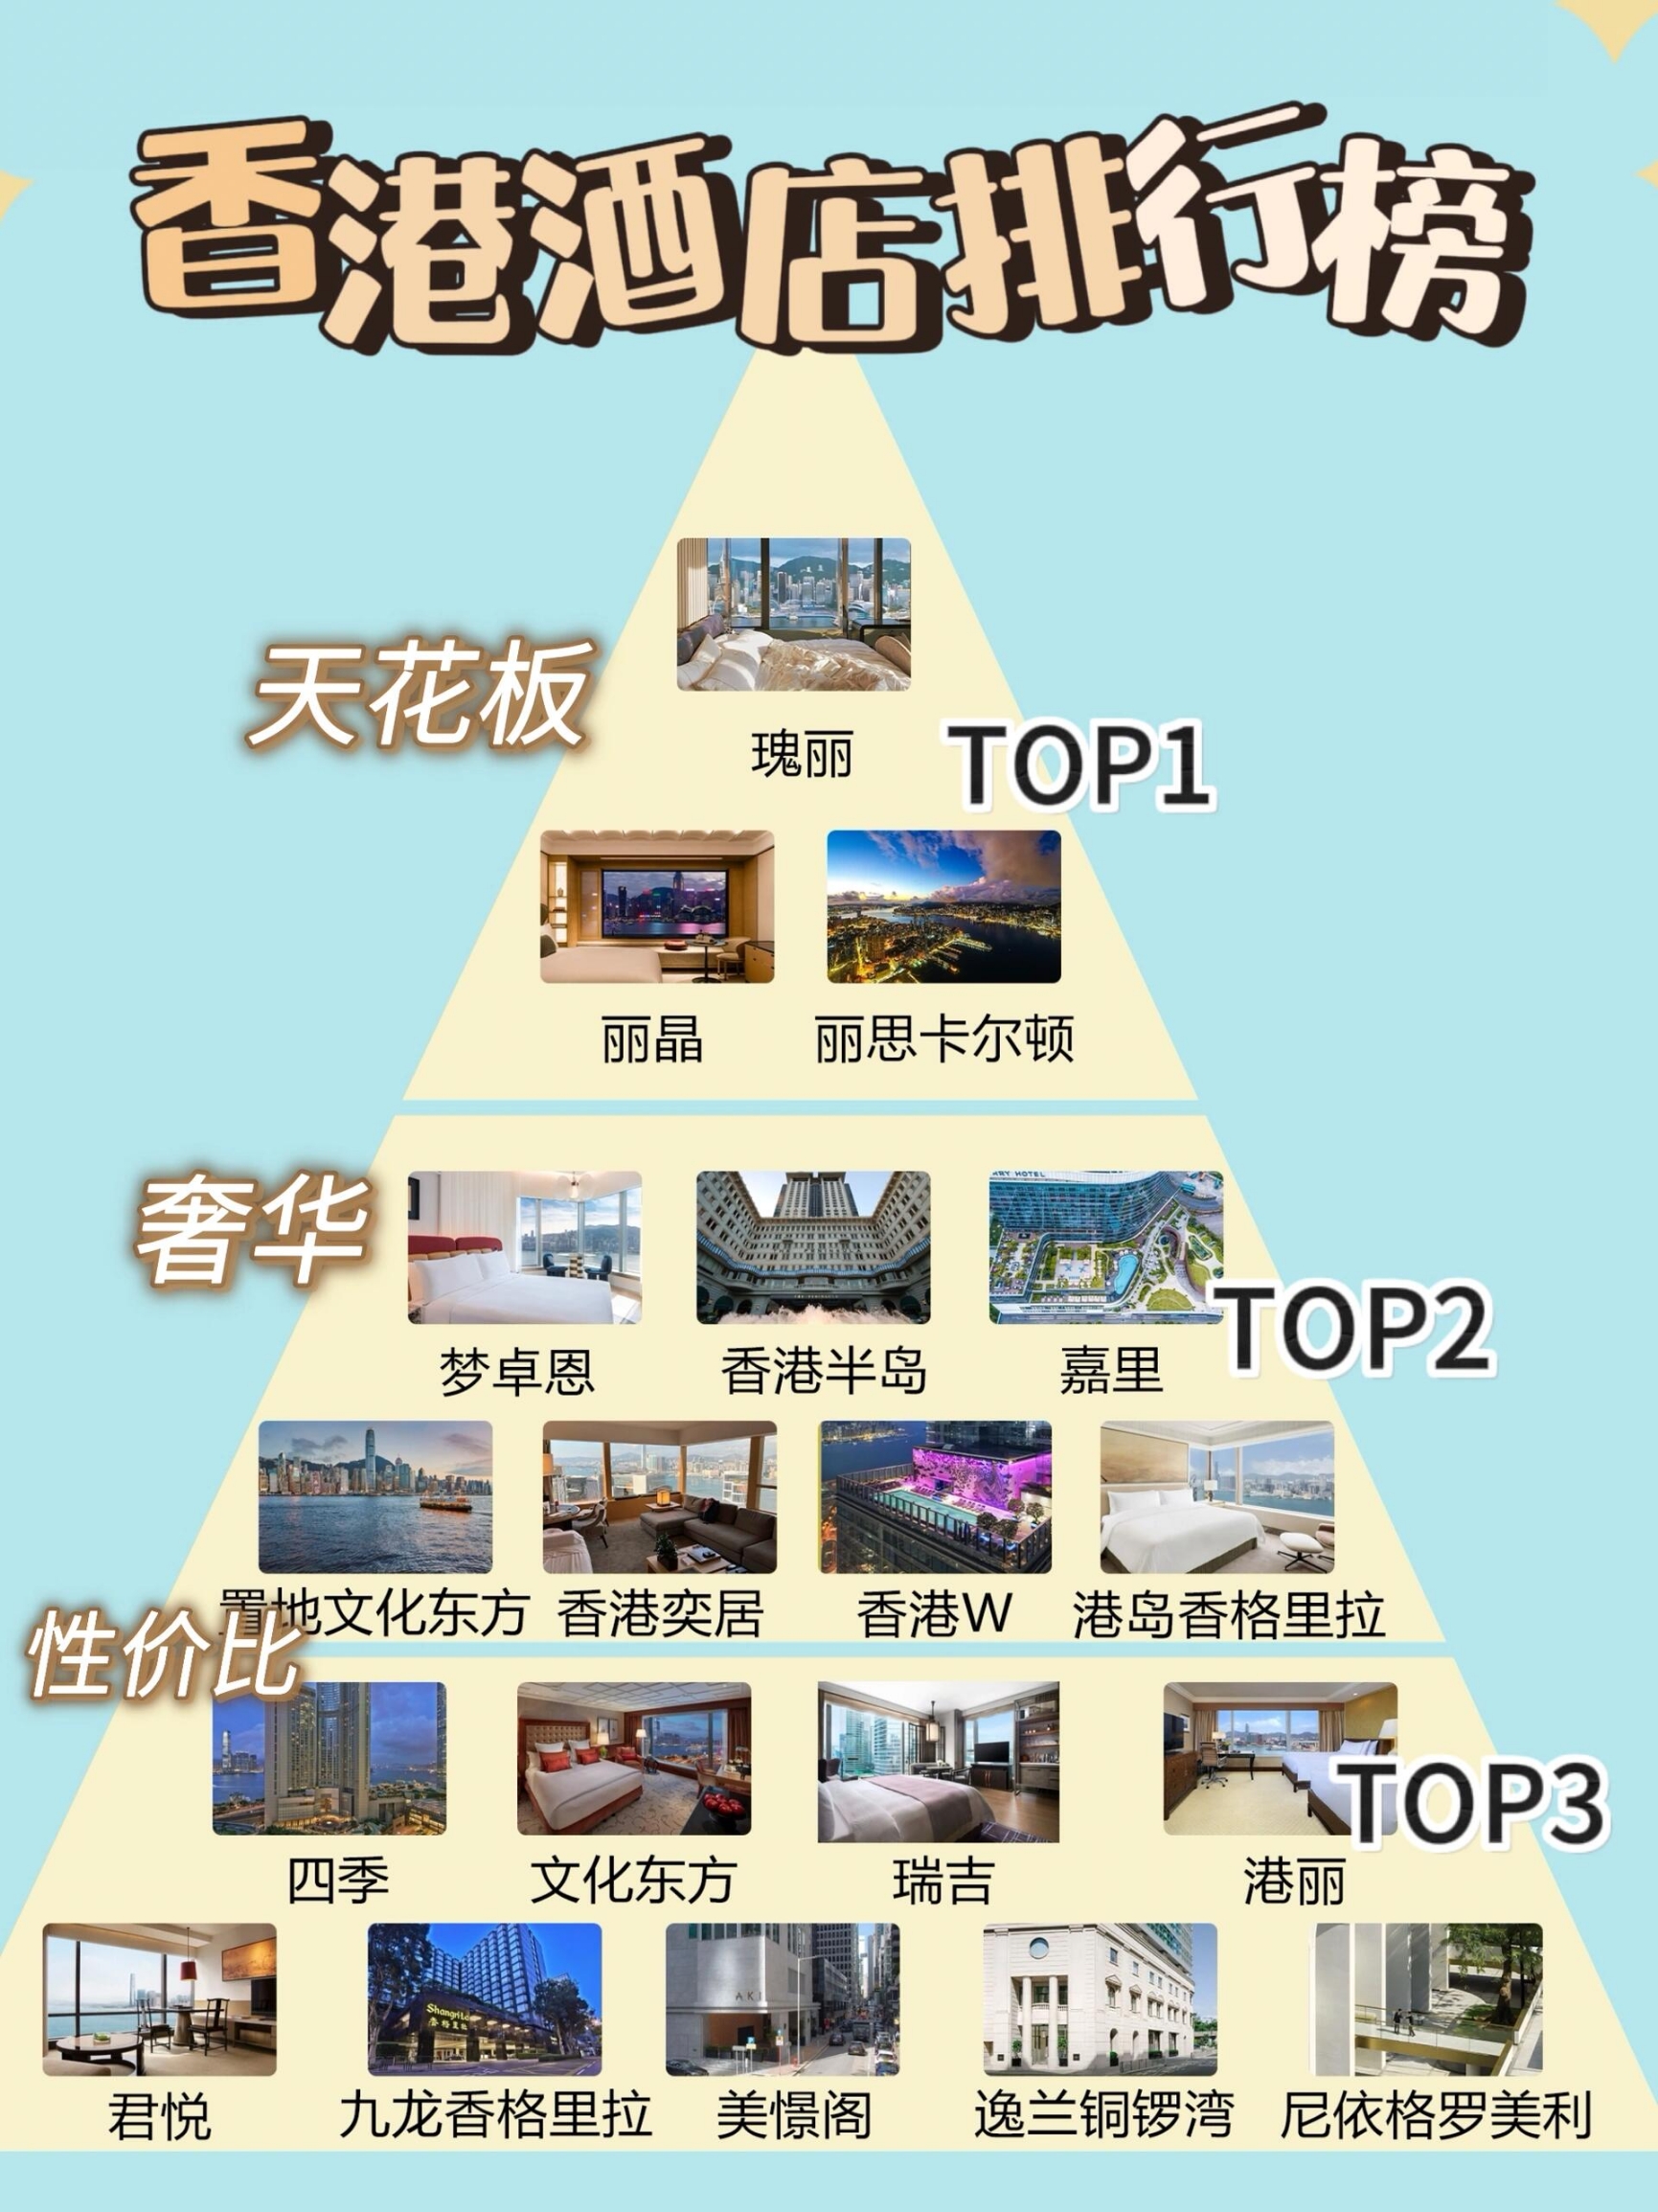 一张图带你看懂香港酒店排行榜